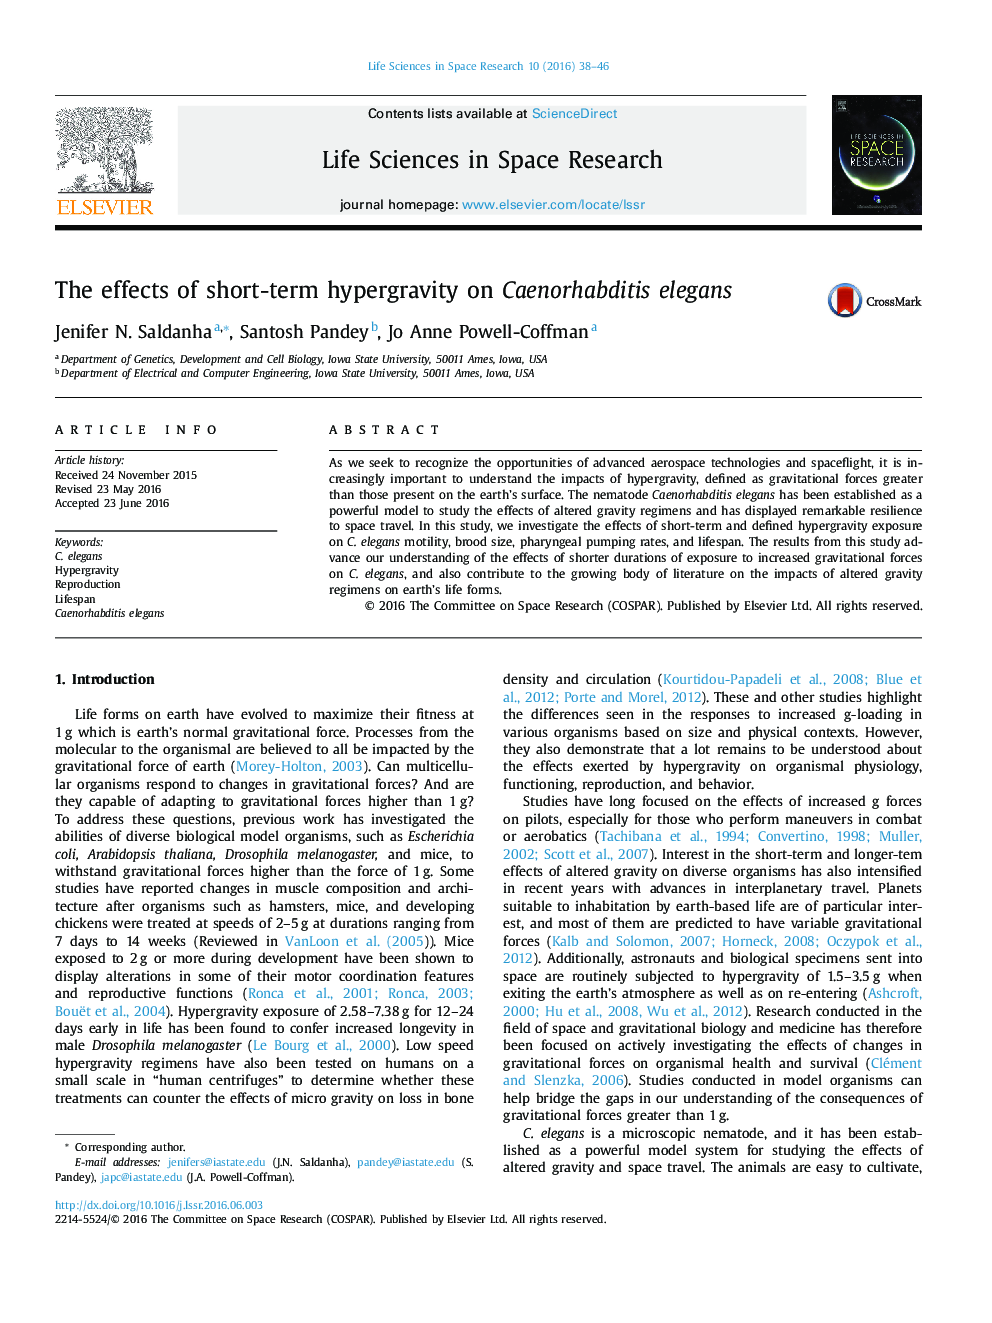 اثرات hypergravity کوتاه مدت بر روی Caenorhabditis elegans 